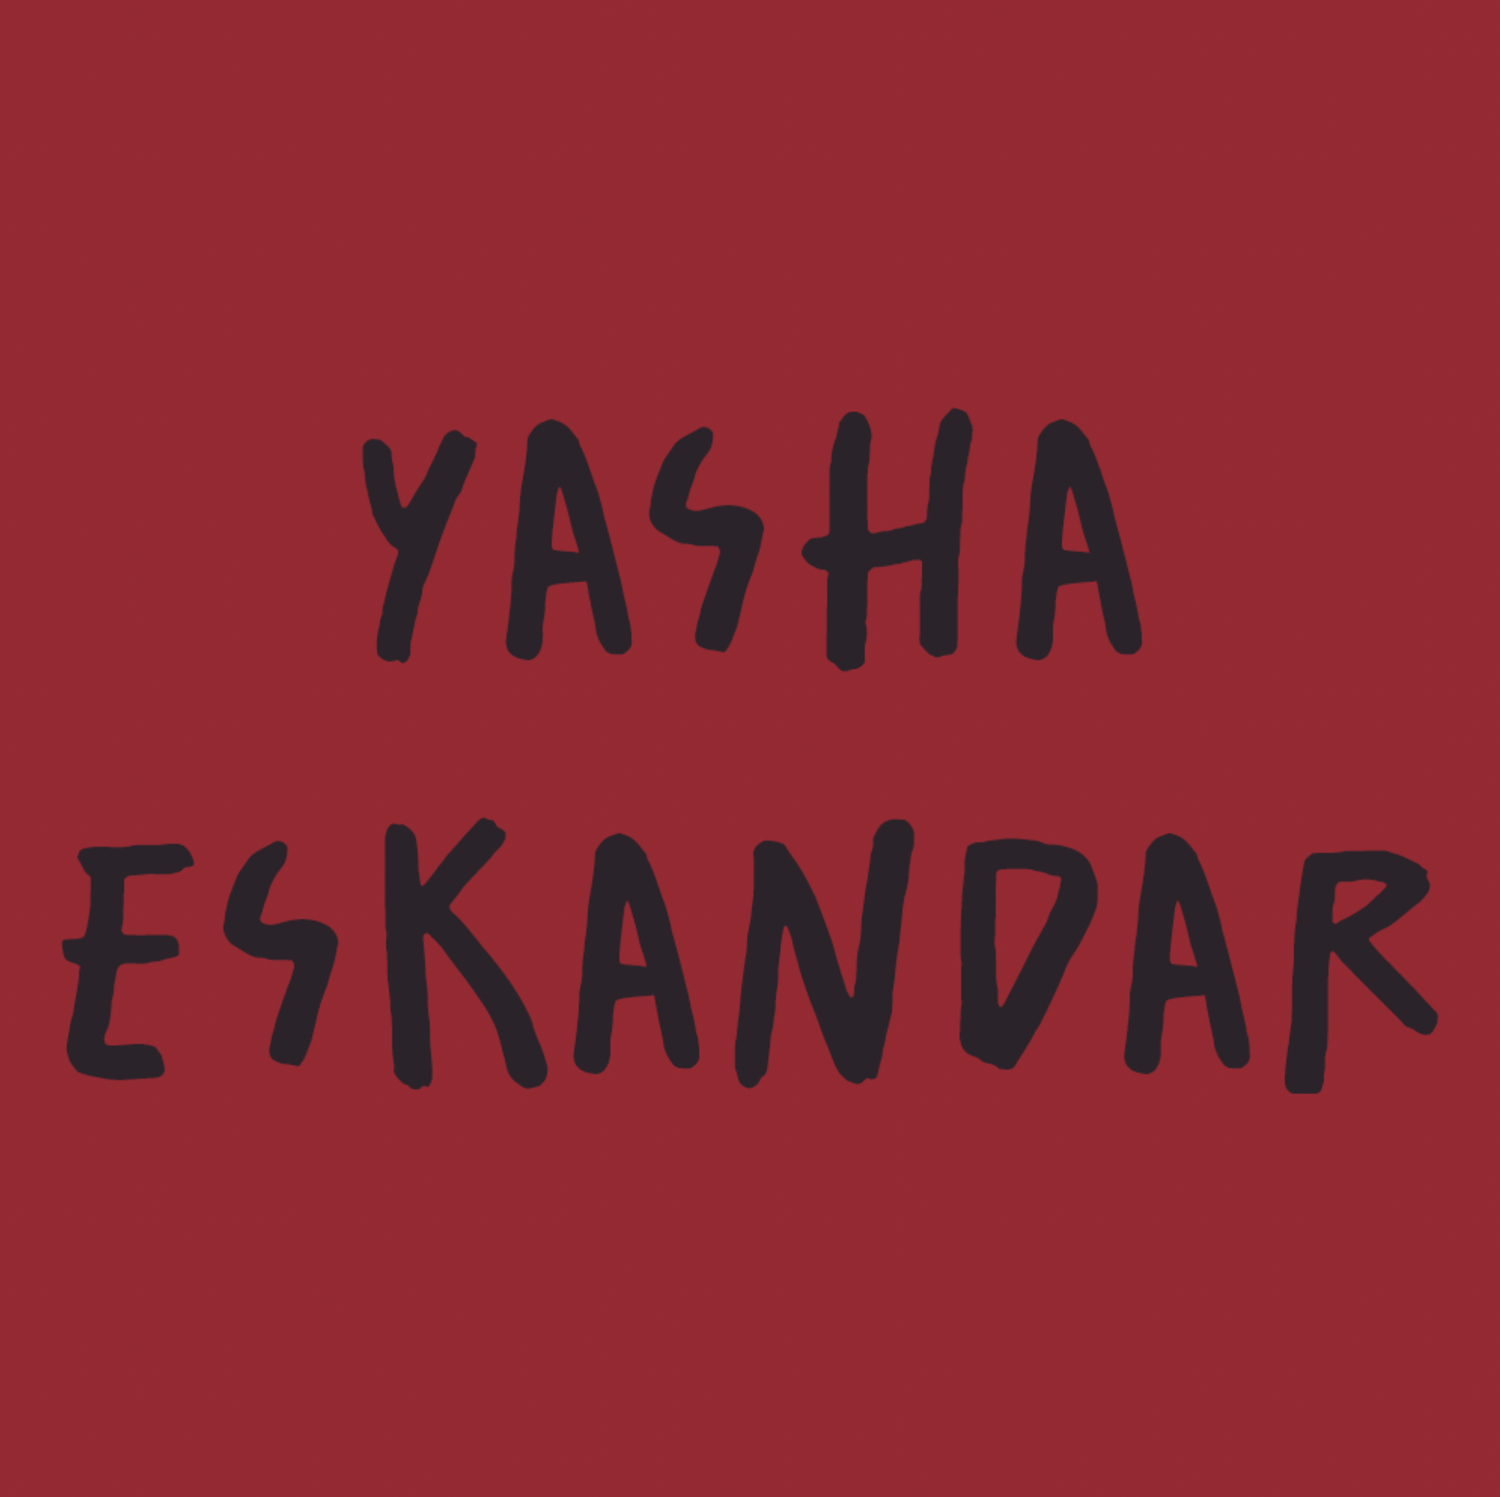 Yasha Eskandar